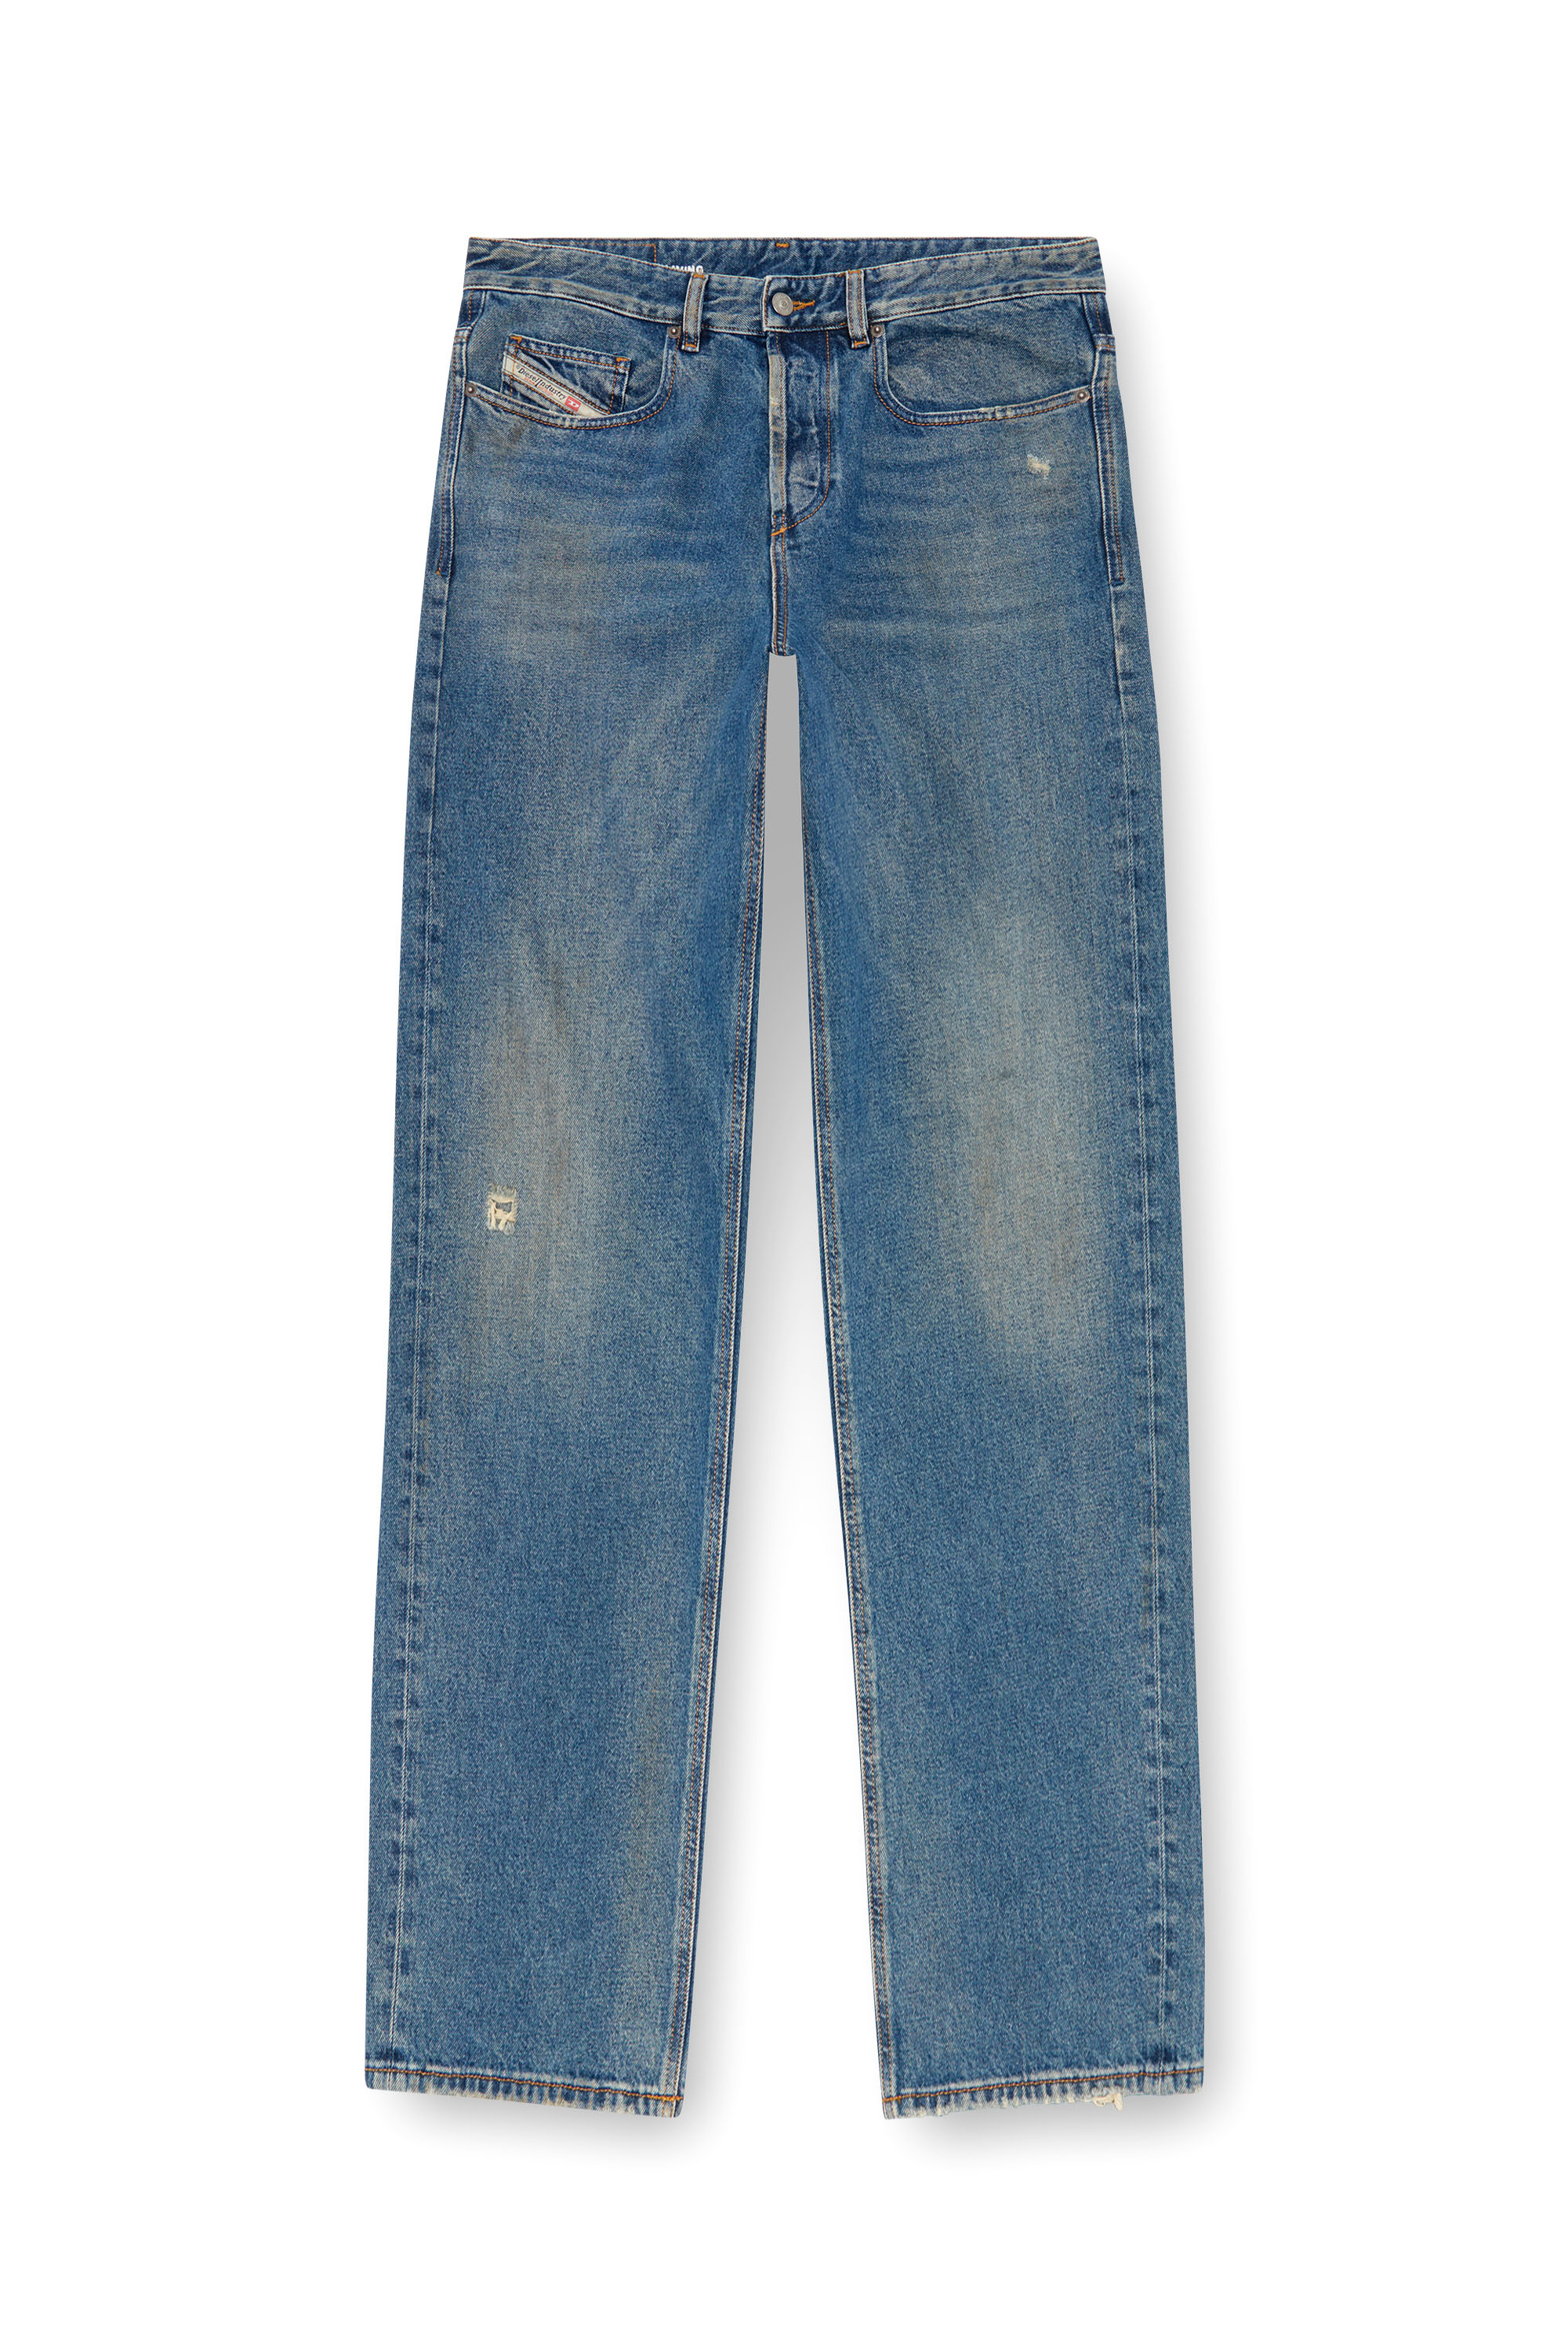 Diesel - Man Straight Jeans 2001 D-Macro 09J79, Medium blue - Image 3